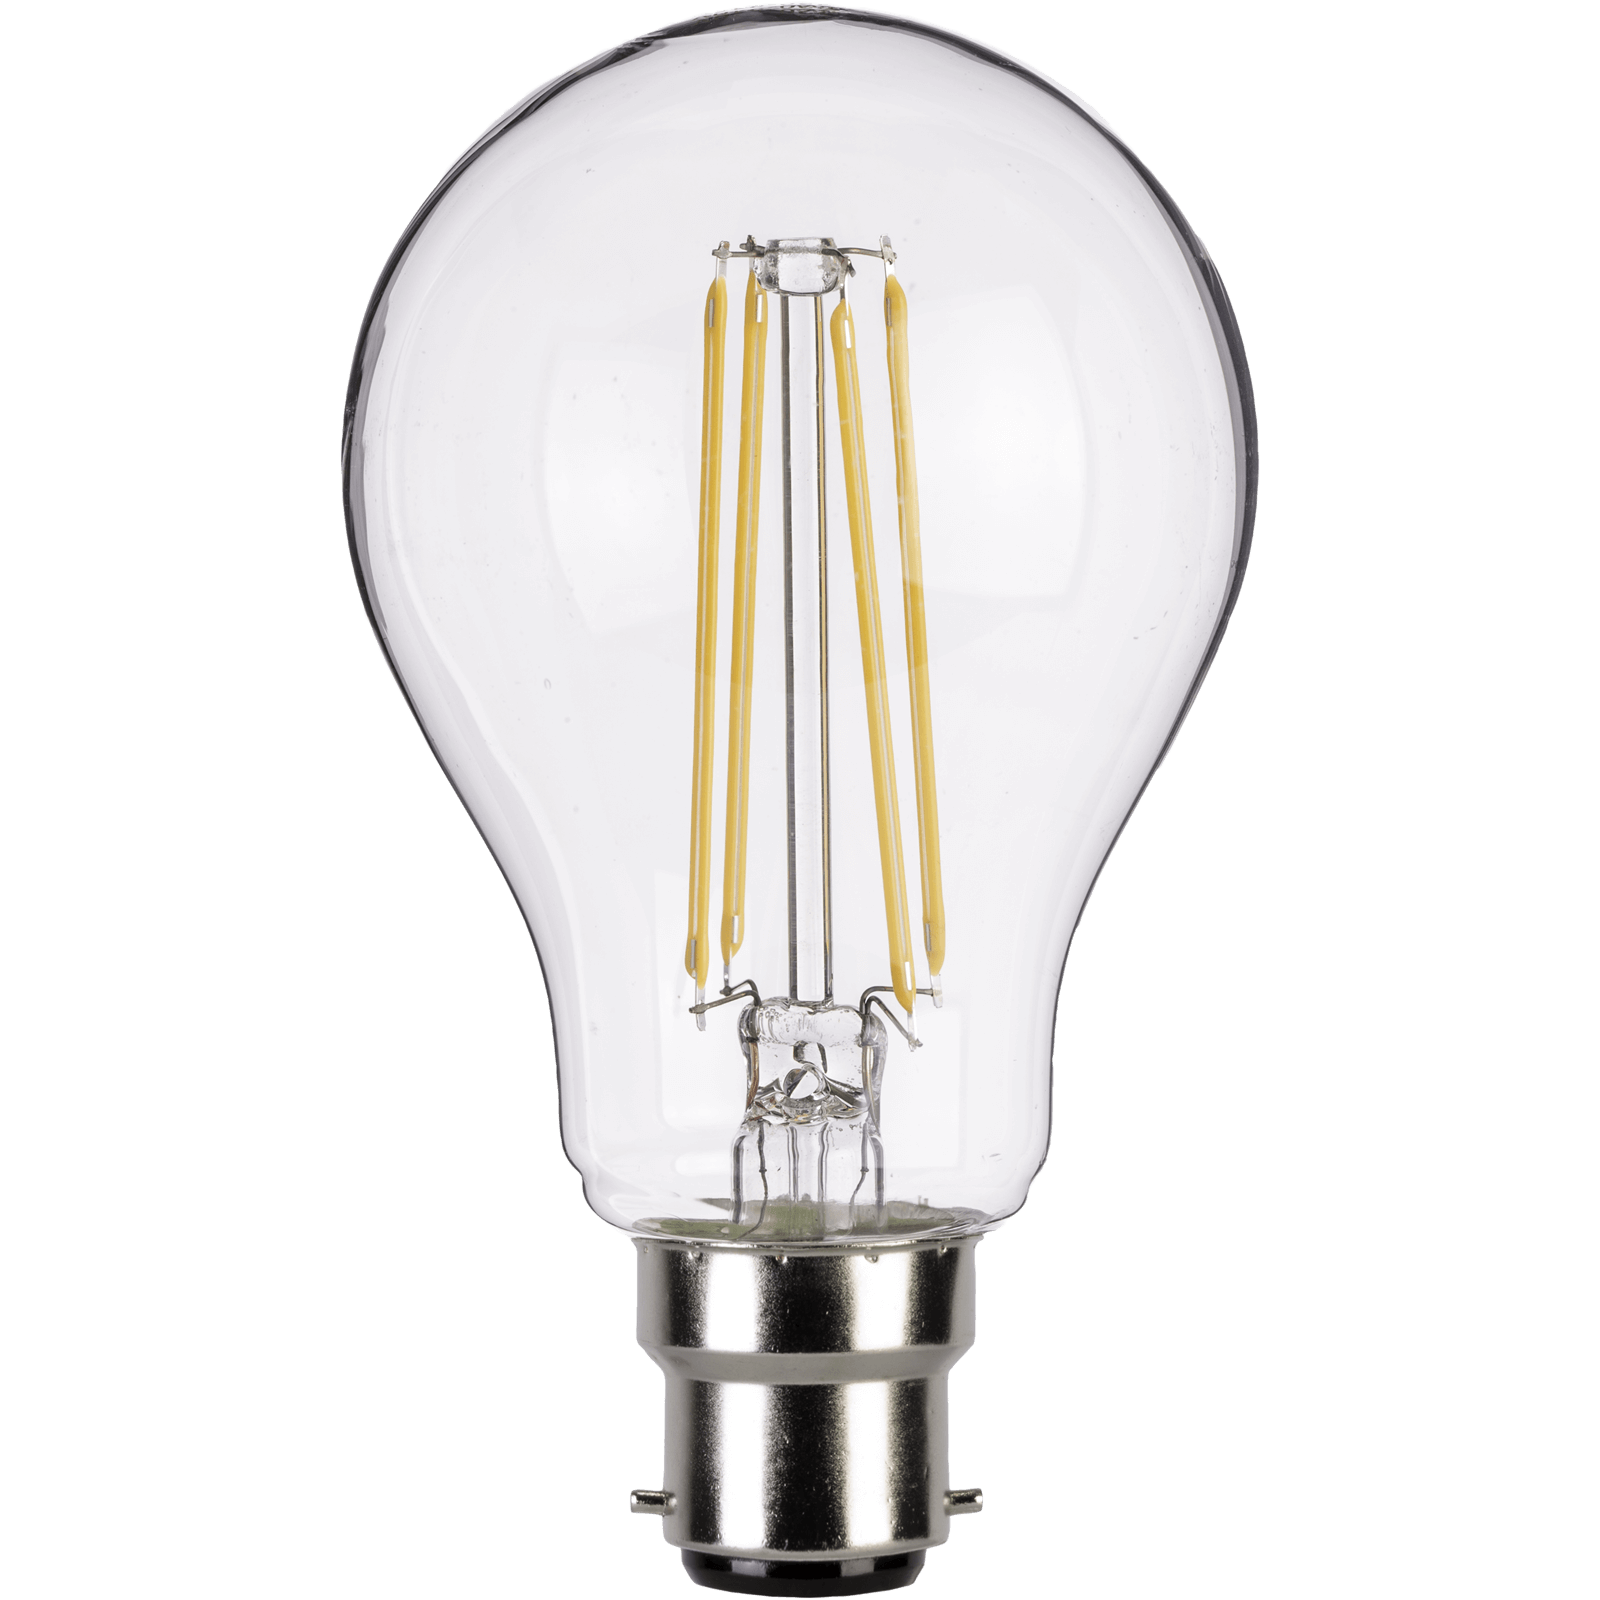 Photo of Tcp Led Filament Clear Classic 6w Bc Light Bulb - 3 Pack